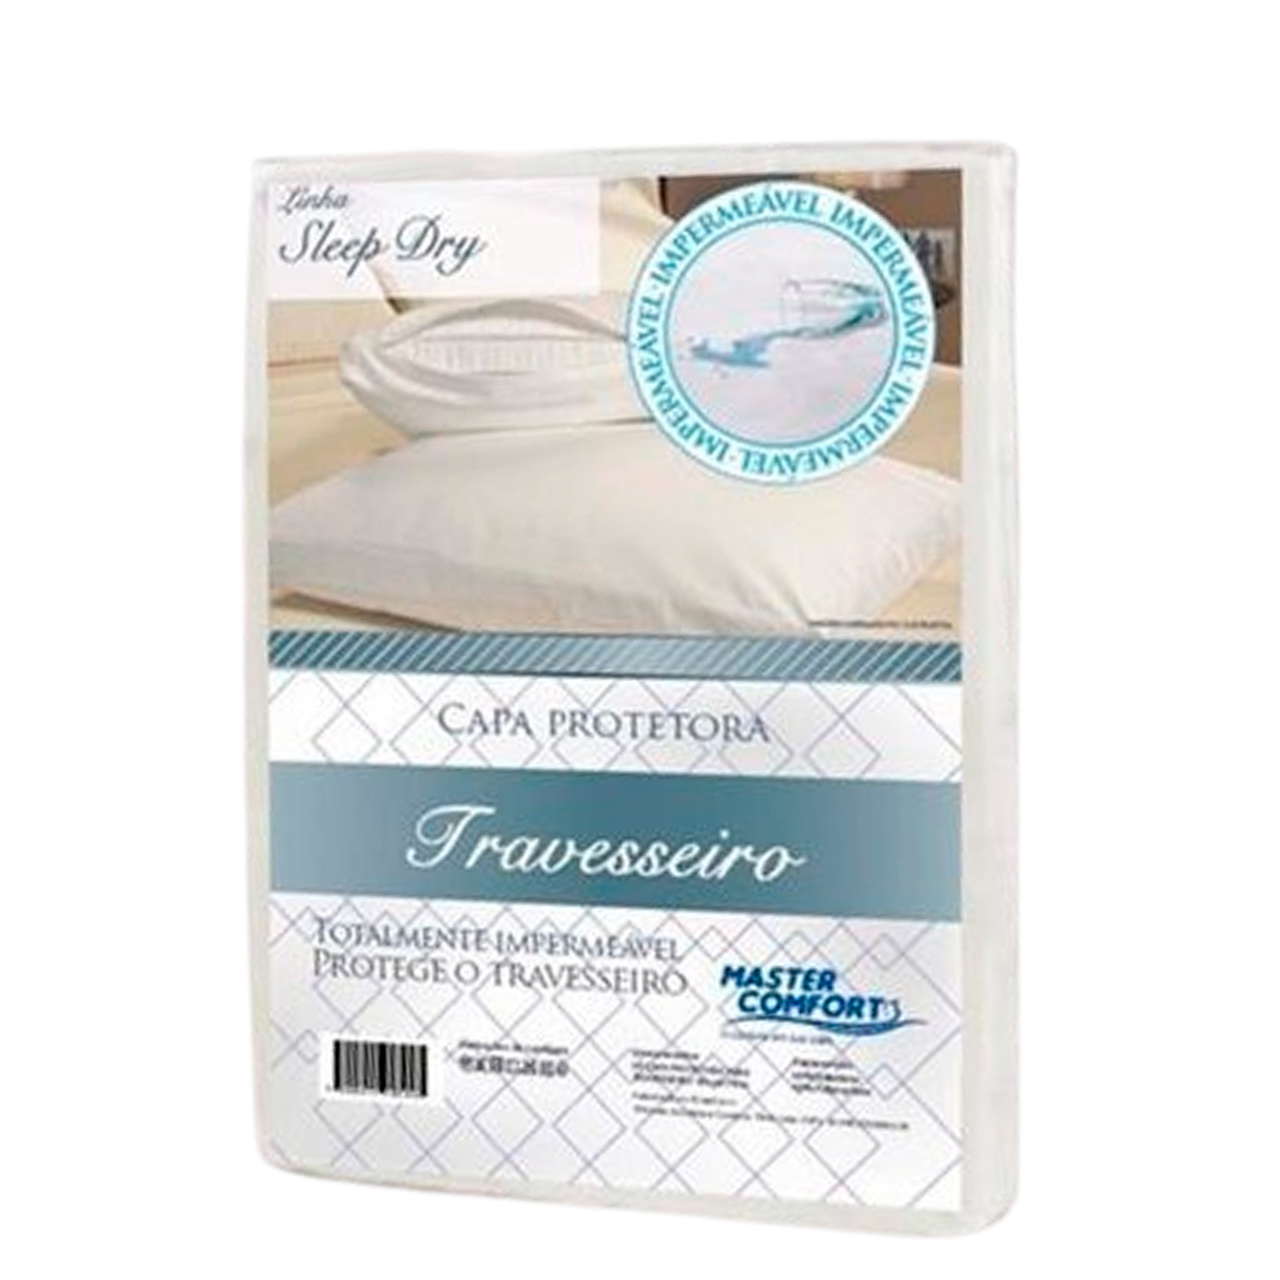 Capa Protetora Impermeável De Travesseiro Sleep Dry 70x50cm